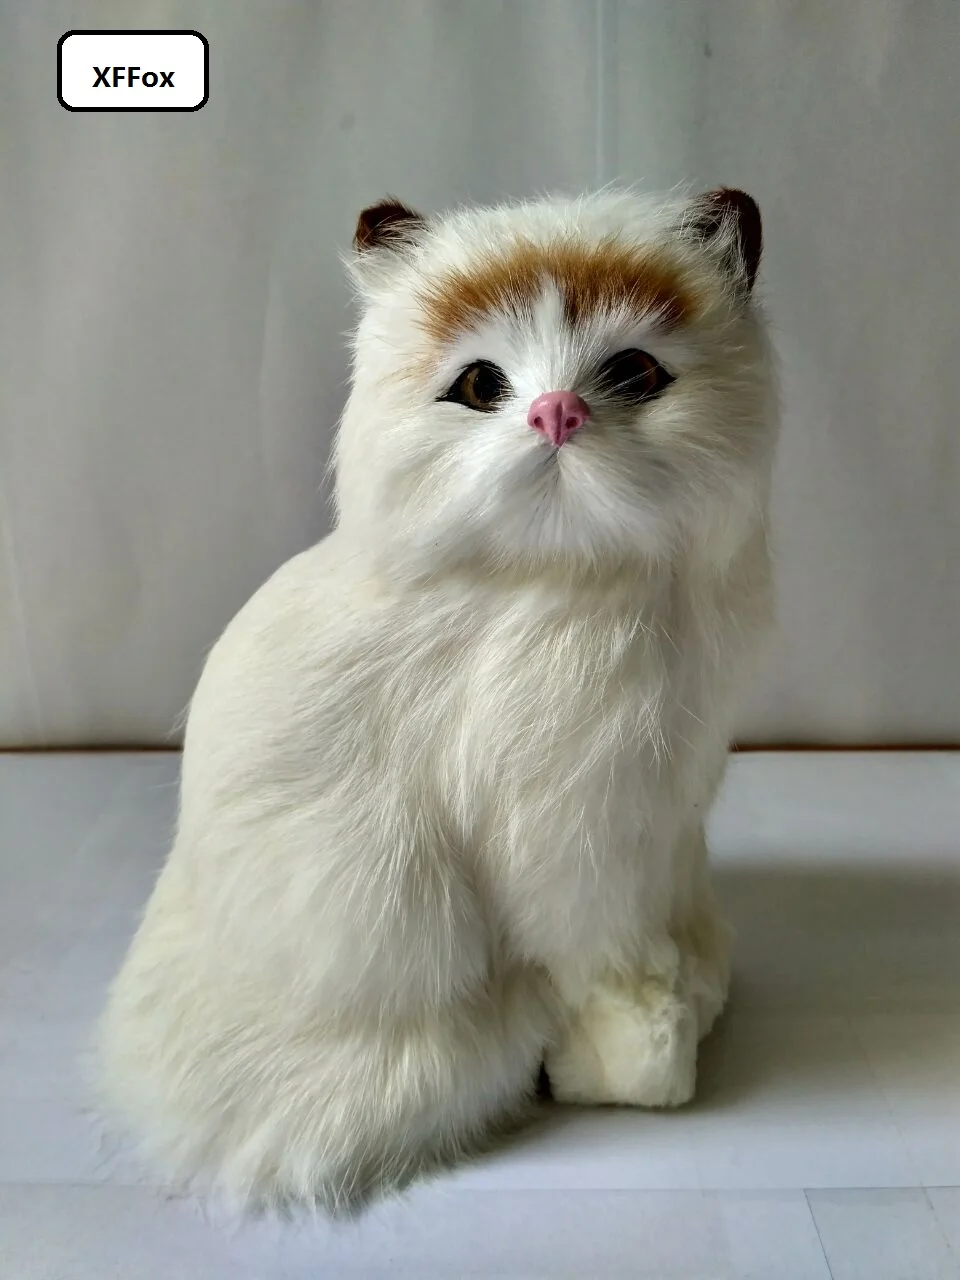 

Симпатичная реальная жизнь, желтая голова, сидящий Кот, модель из пластика и пуха, имитация белого кота, кукла, подарок, около 20x15x15 см xf1318